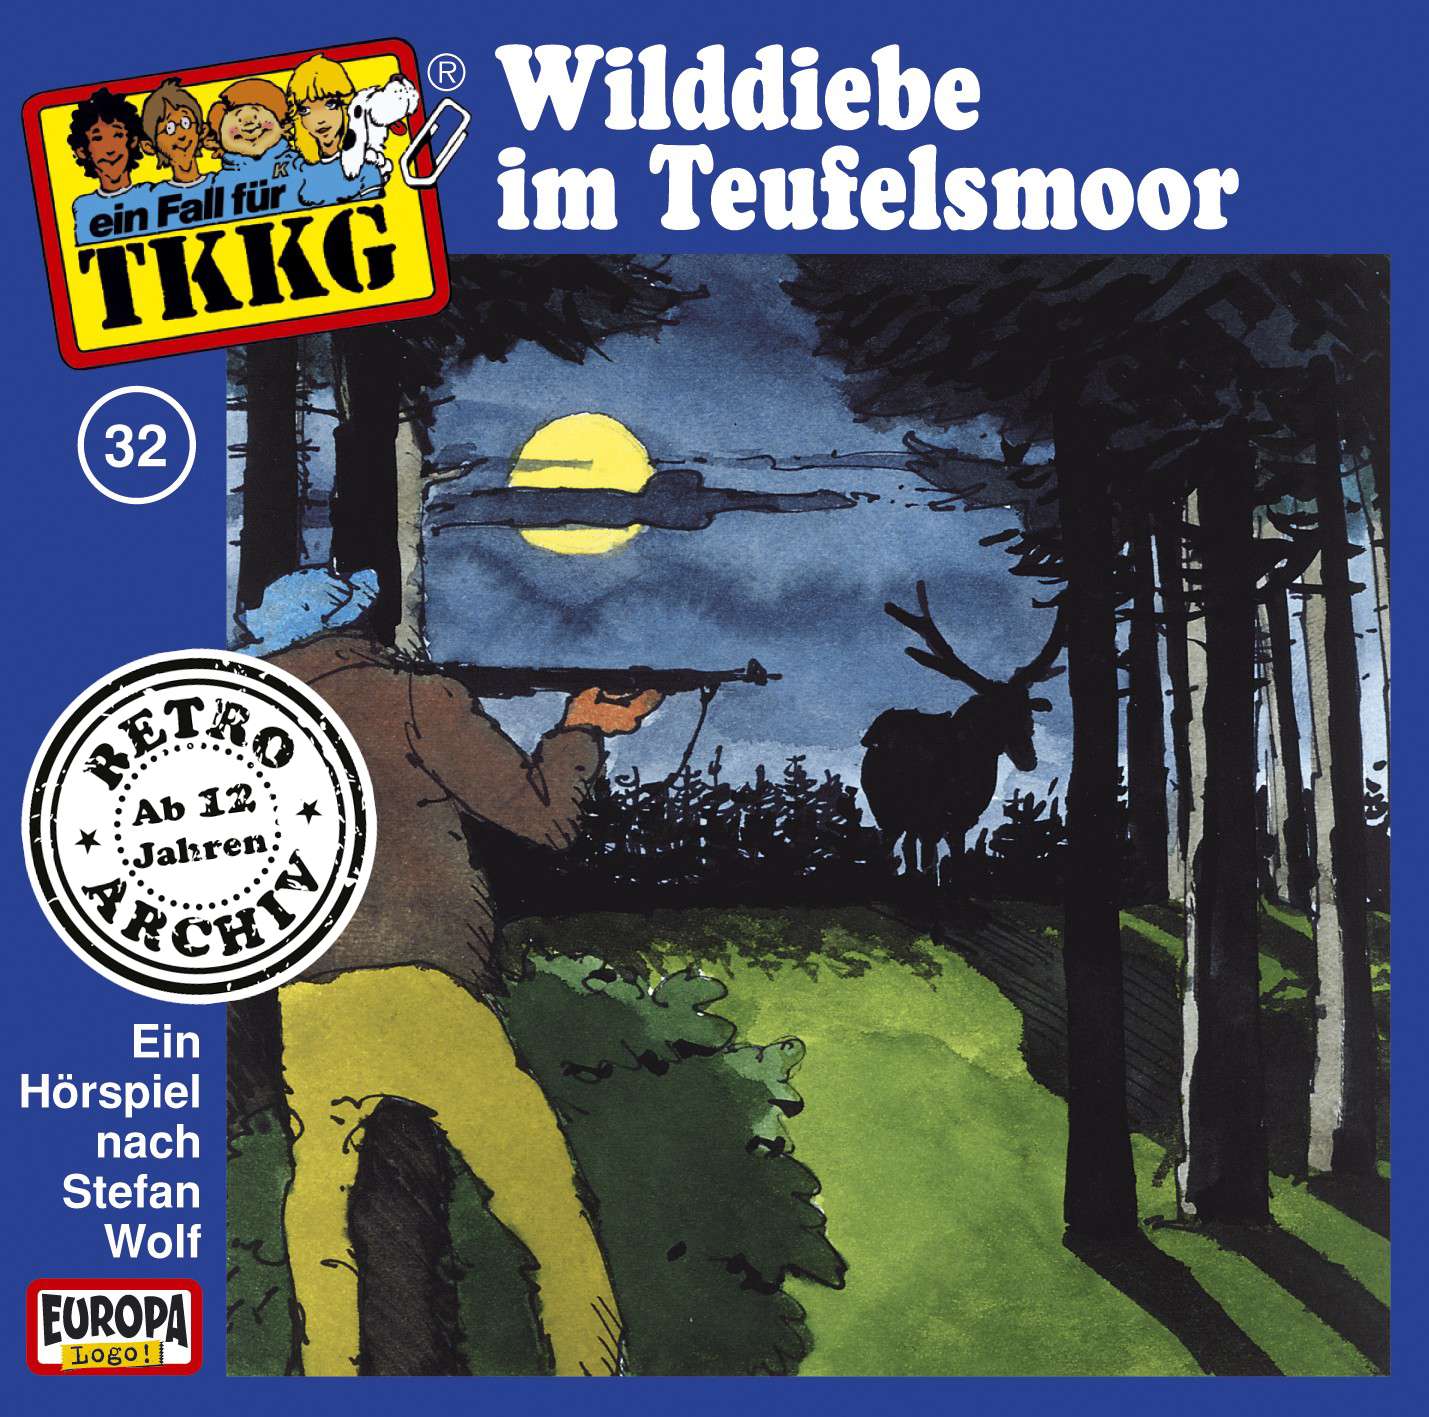 TKKG Retro-Archiv - Wilddiebe im Teufelsmoor